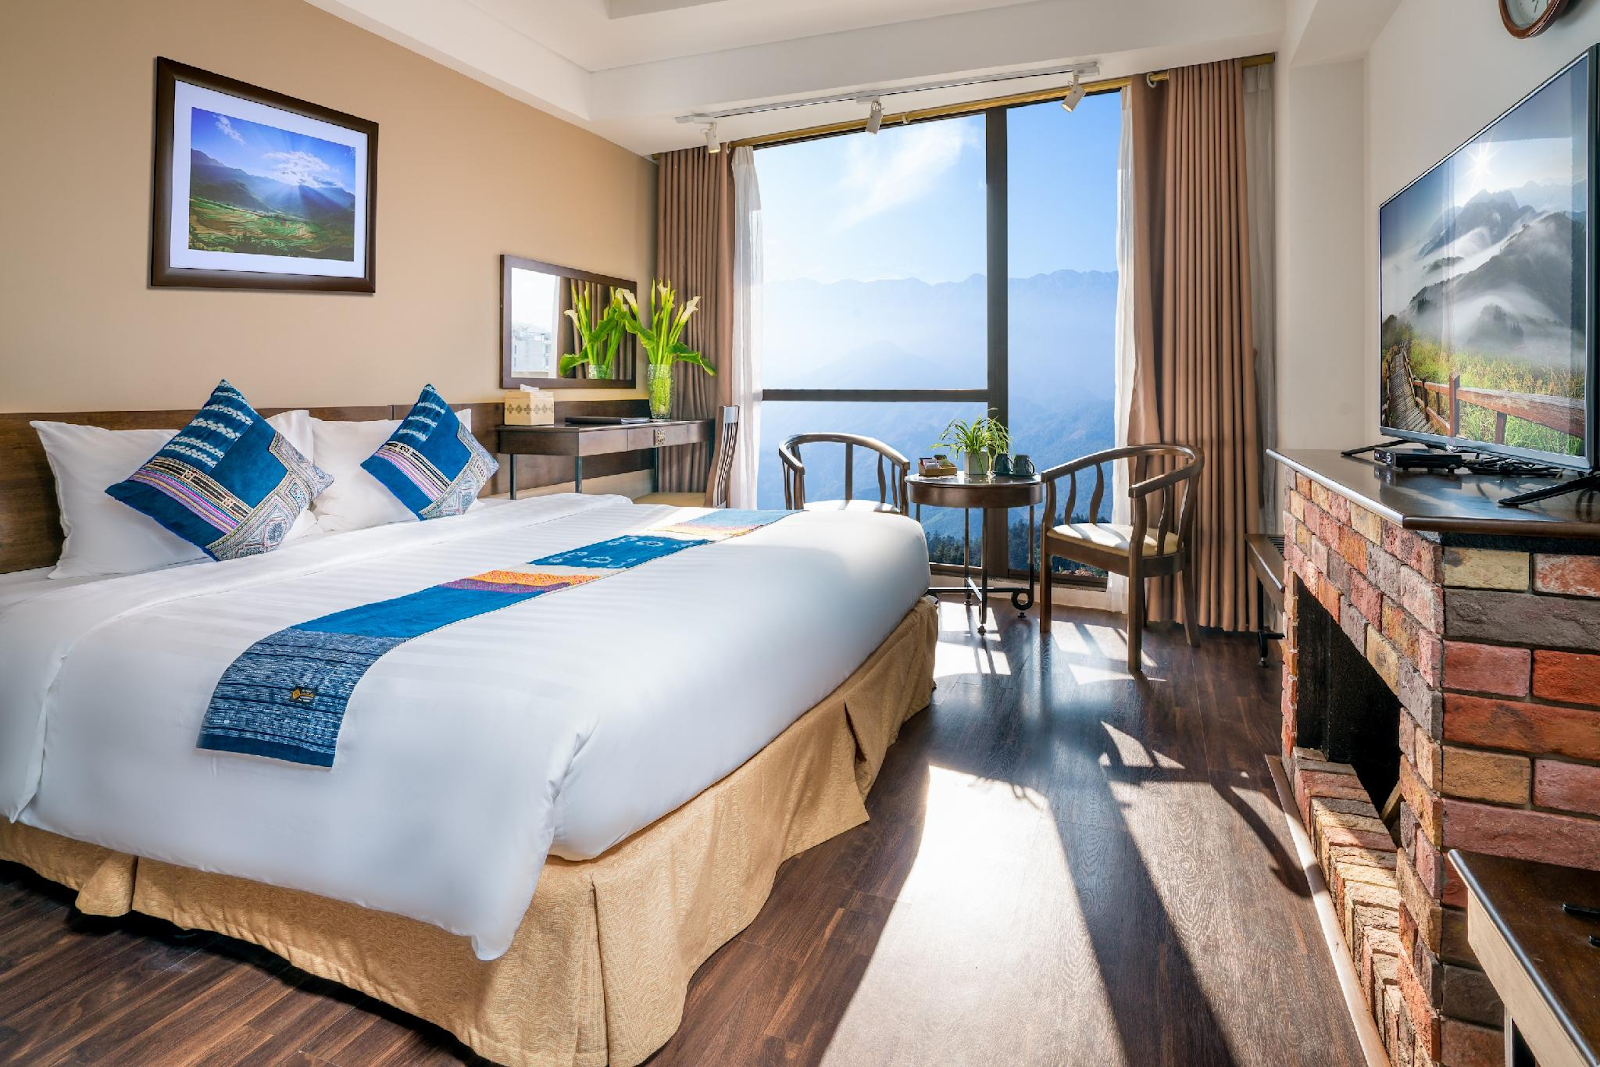 Amazing Sapa Hotel có thiết kế rất đẹp khi các phòng đều có view đẹp ngắm nhìn được toàn cảnh núi non hùng vĩ ở Tây Bắc (Nguồn: agoda.com)